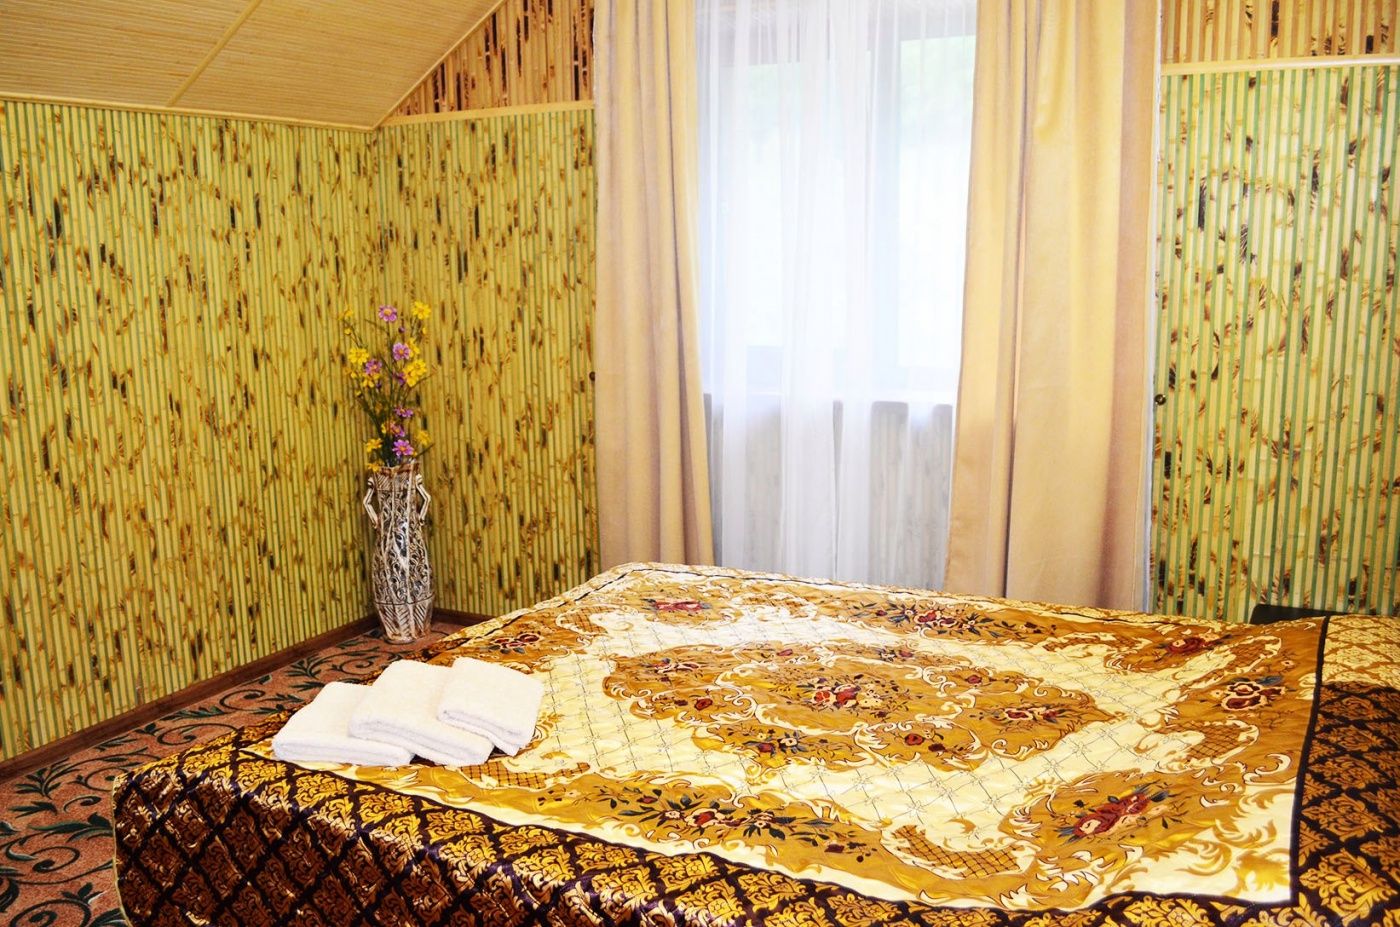 Гостевой дом "Лесной Кордон" Республика Крым Номер в гостевом доме, фото 2